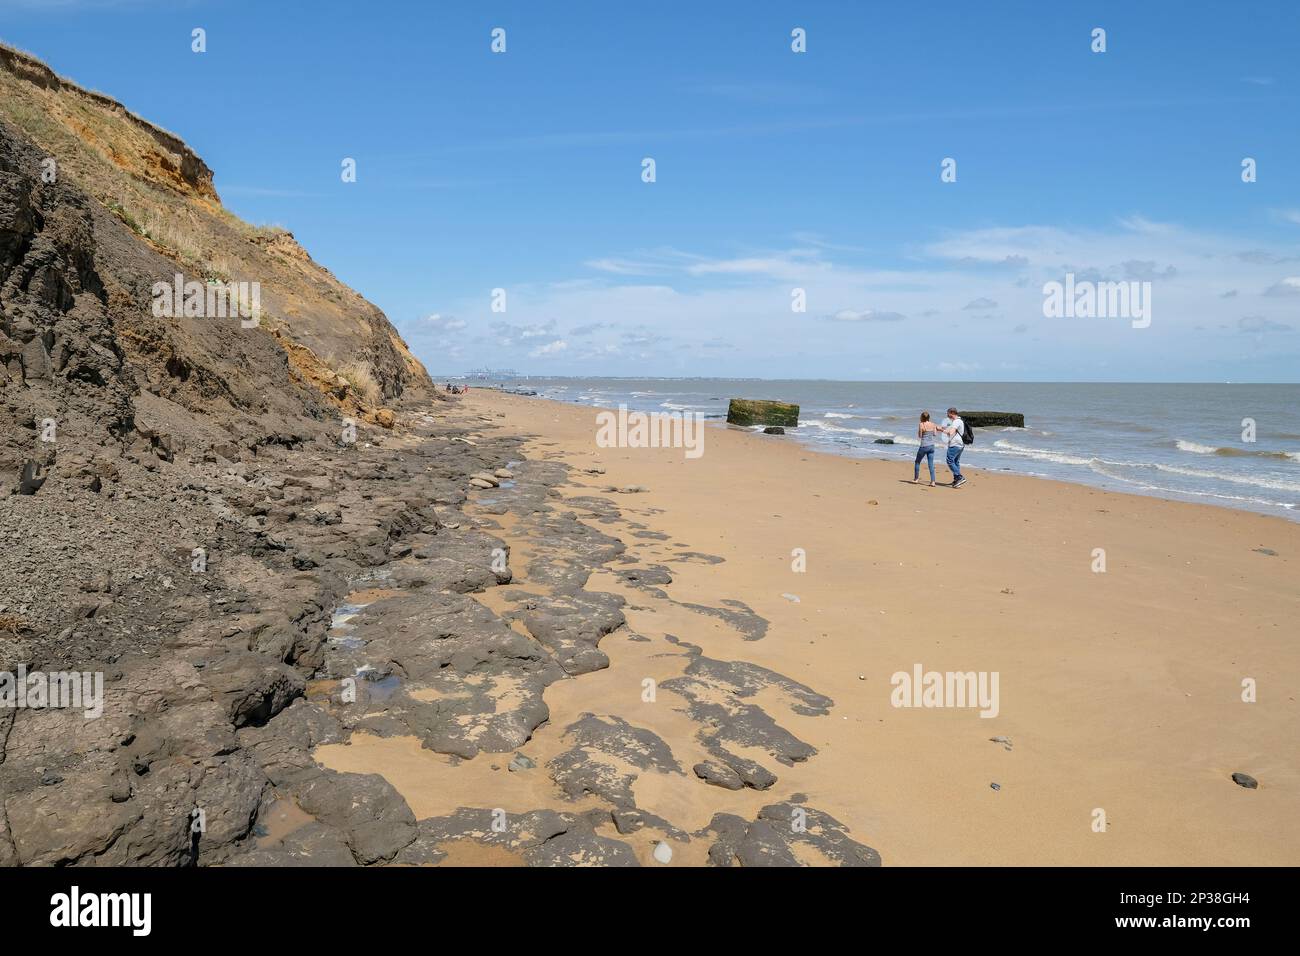 Erosione costiera / slumping sulla spiaggia di Walton-on-the-Naze, Essex, Regno Unito. Foto Stock